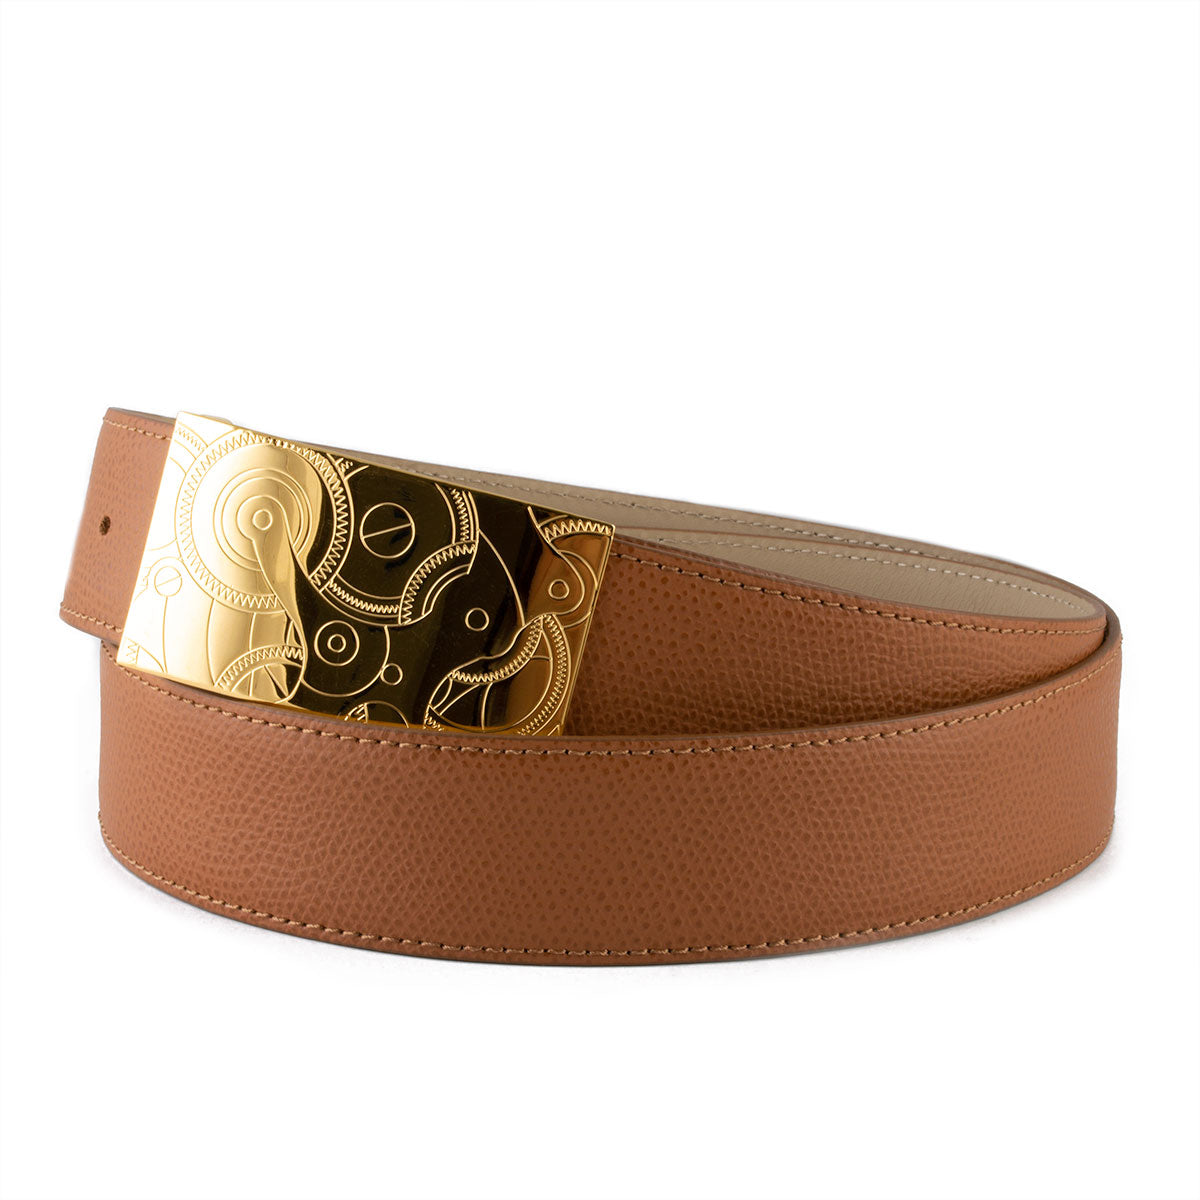 Pre-Owned & Vintage GUCCI Belts for Men